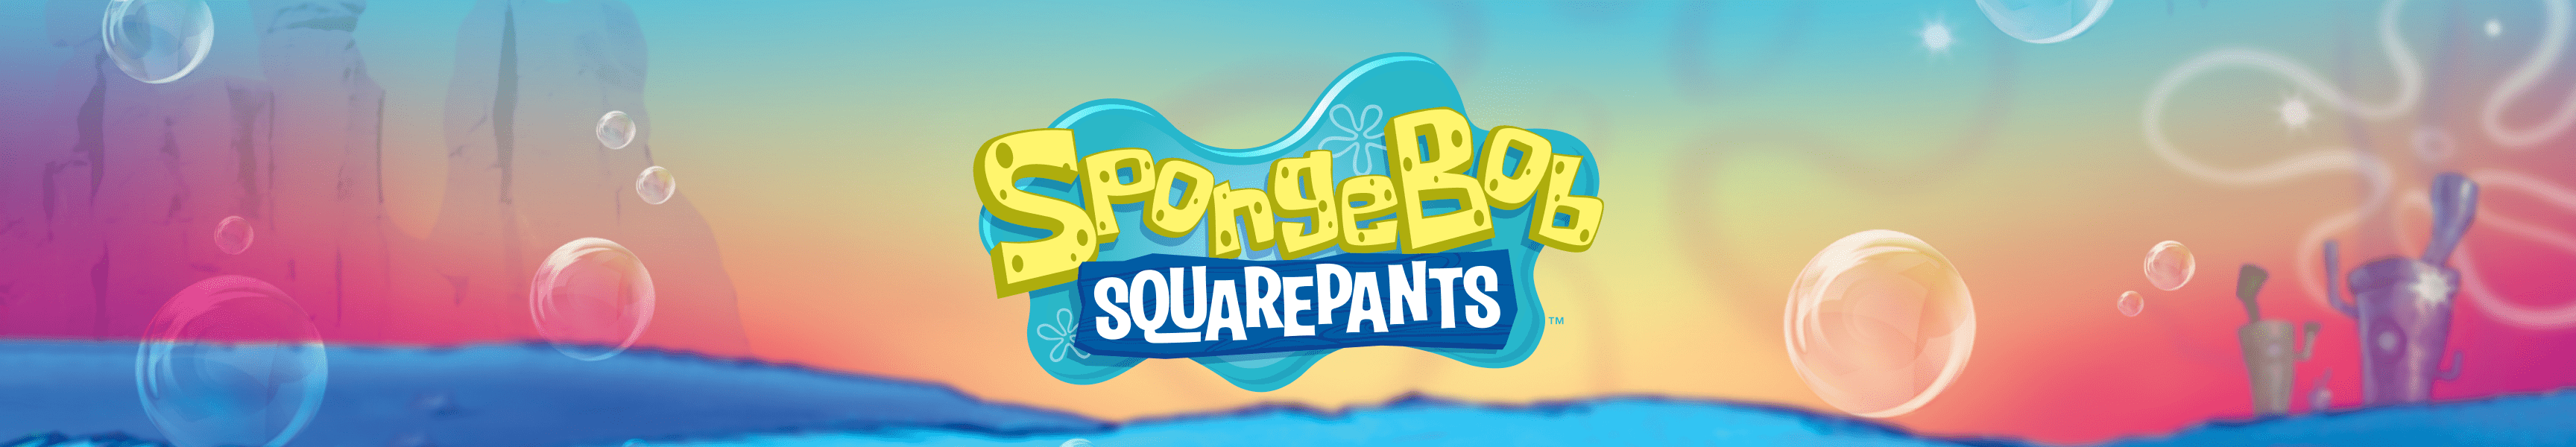 SpongeBob SquarePants Let's Face It!